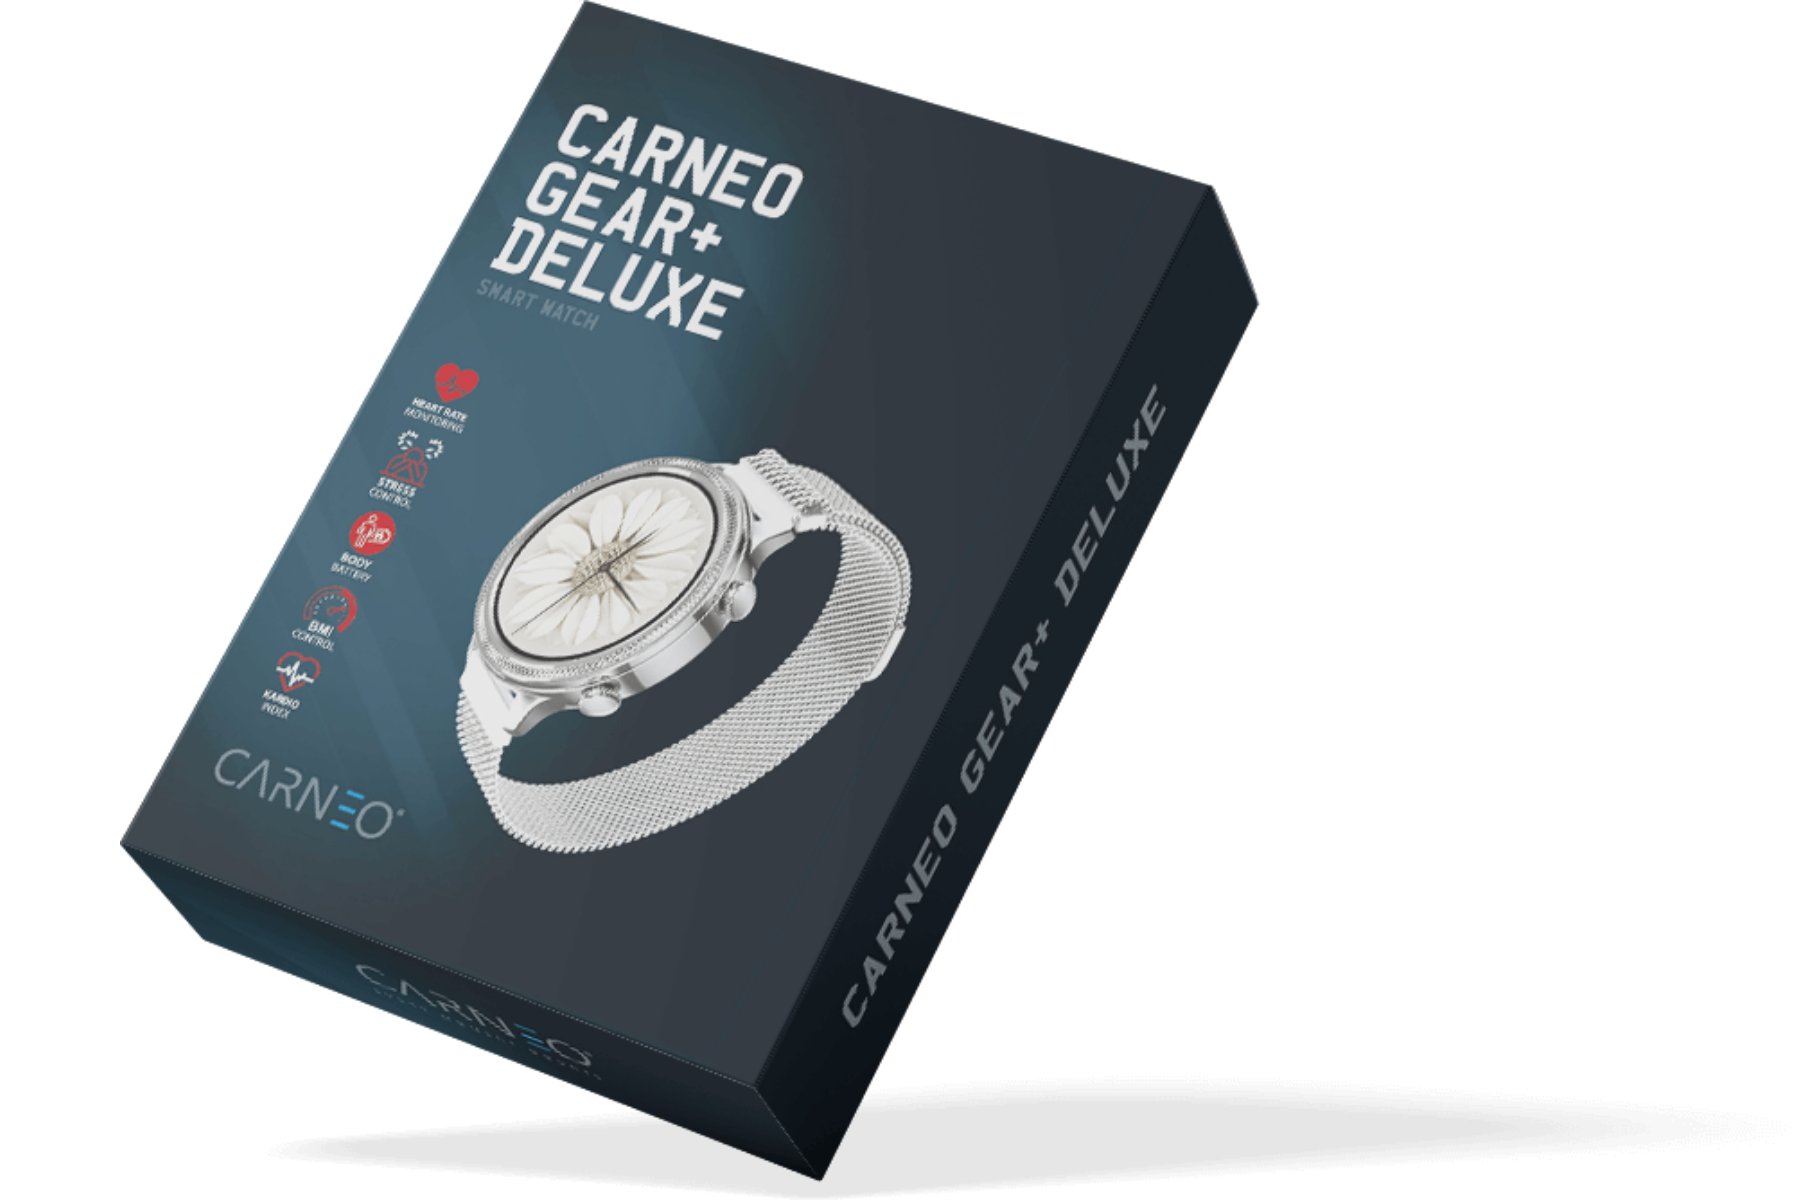 Smart hodinky Carneo Gear+ Deluxe Silver uvod